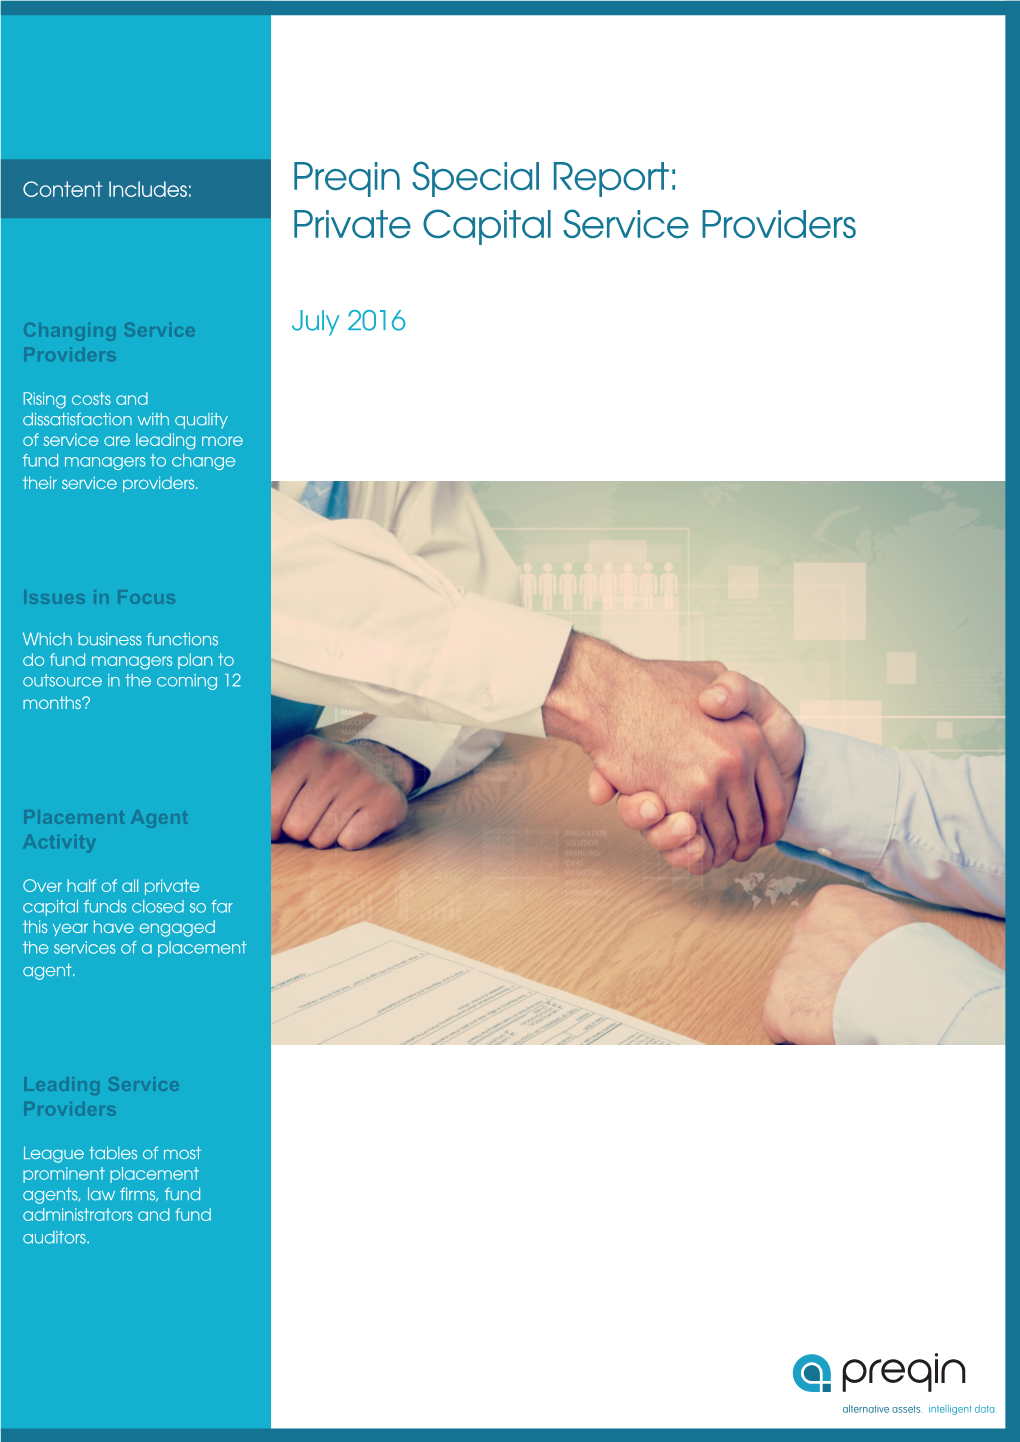 Preqin Special Report: Private Capital Service Providers